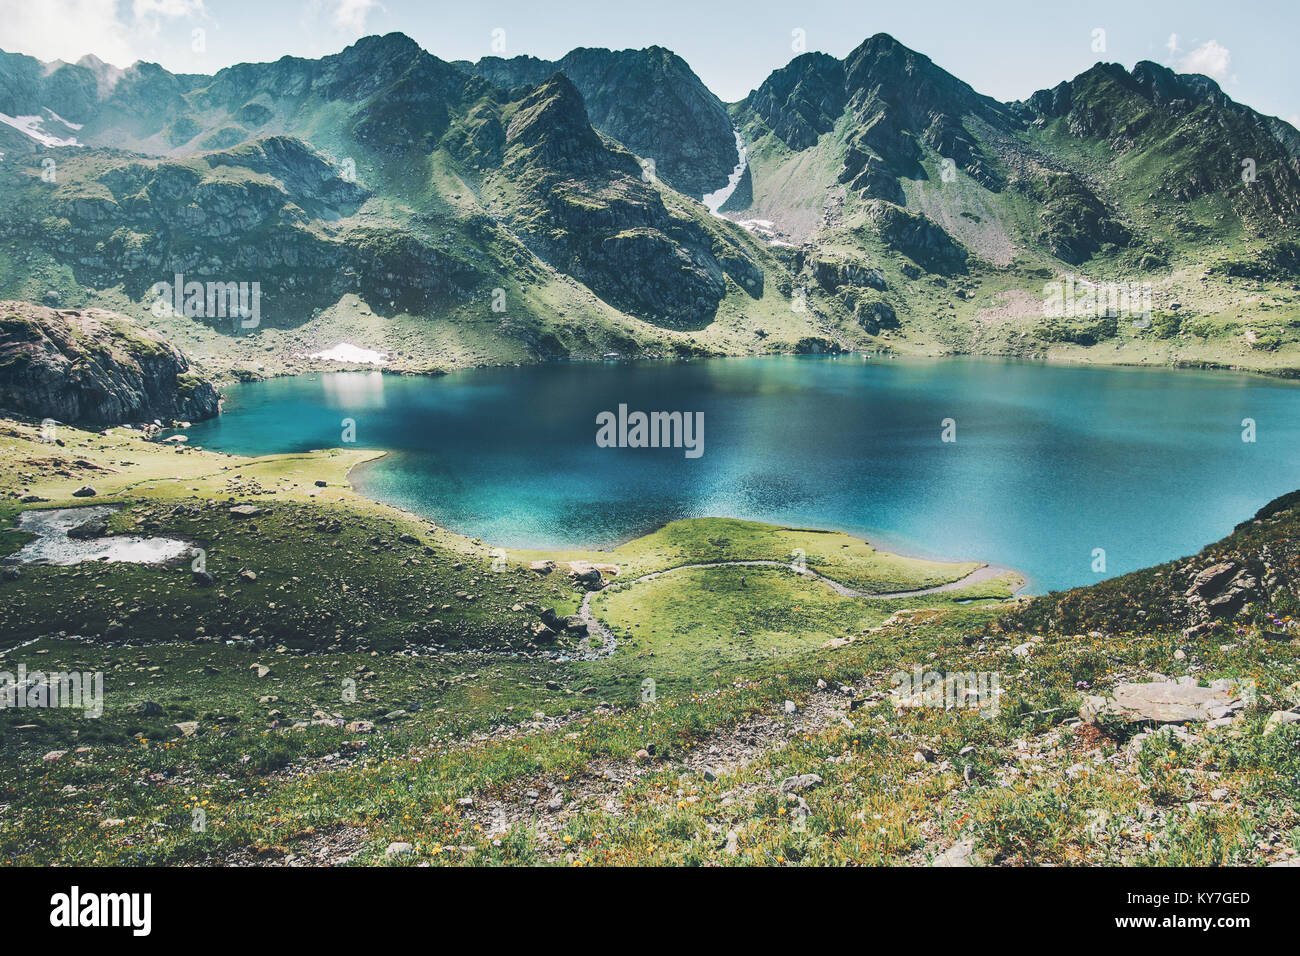 Turquesa del lago y las montañas gama paisaje sereno de viajes de verano vista aérea Foto de stock